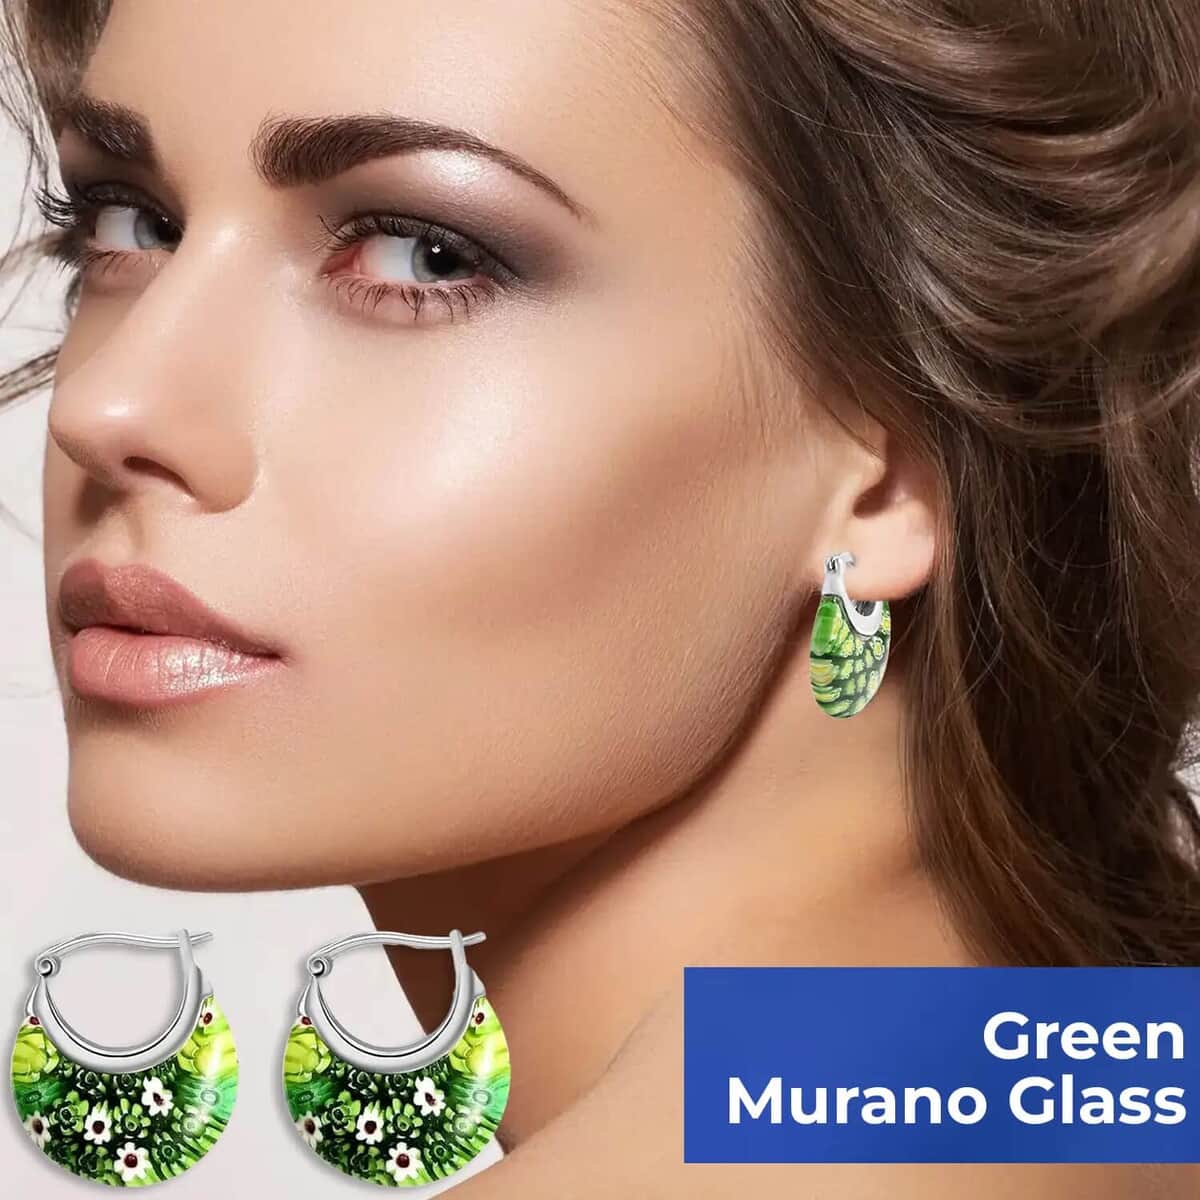 Green Murano Style Hoop Basket Earrings in Stainless Steel, Floral Millefiori Earrings, Sweatproof Hypoallergenic Earrings (Del. in 15-20 Days) image number 3